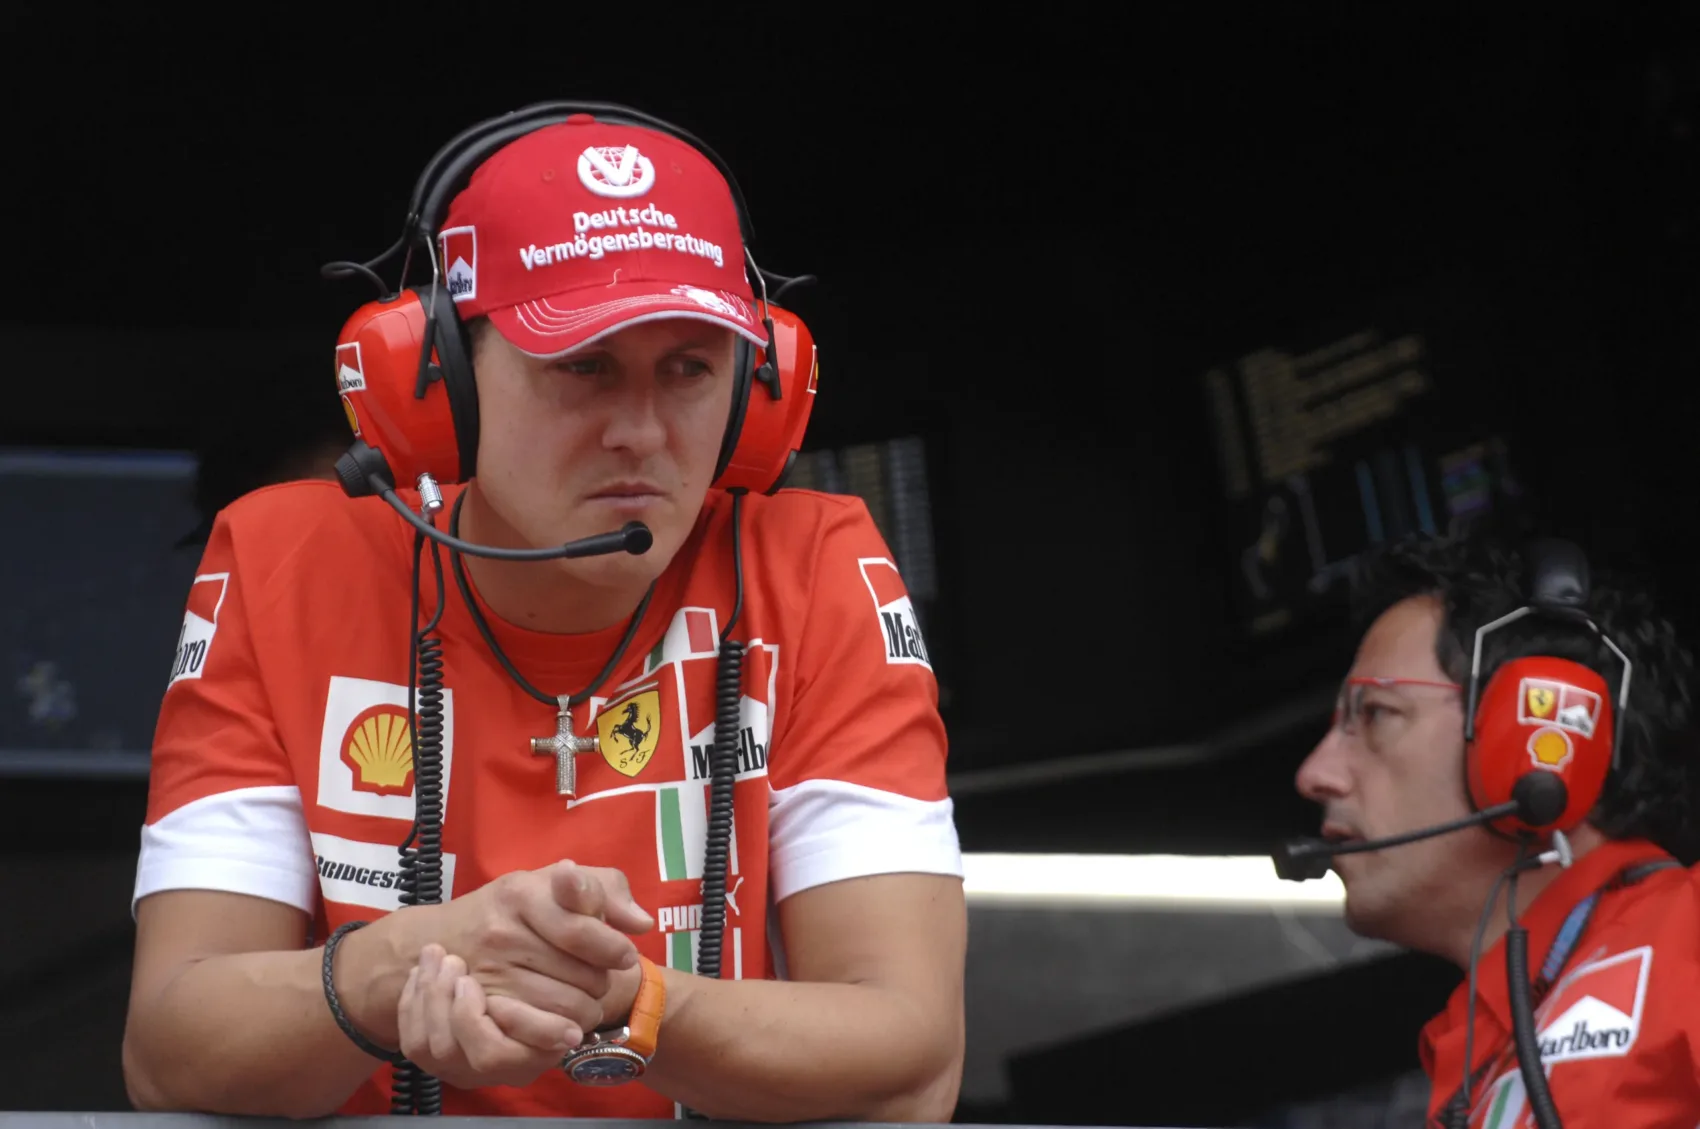 Az F1 legendájának kívánsága: Schumacher szerette volna látni Hamiltont a Ferrariban aranyat nyerni